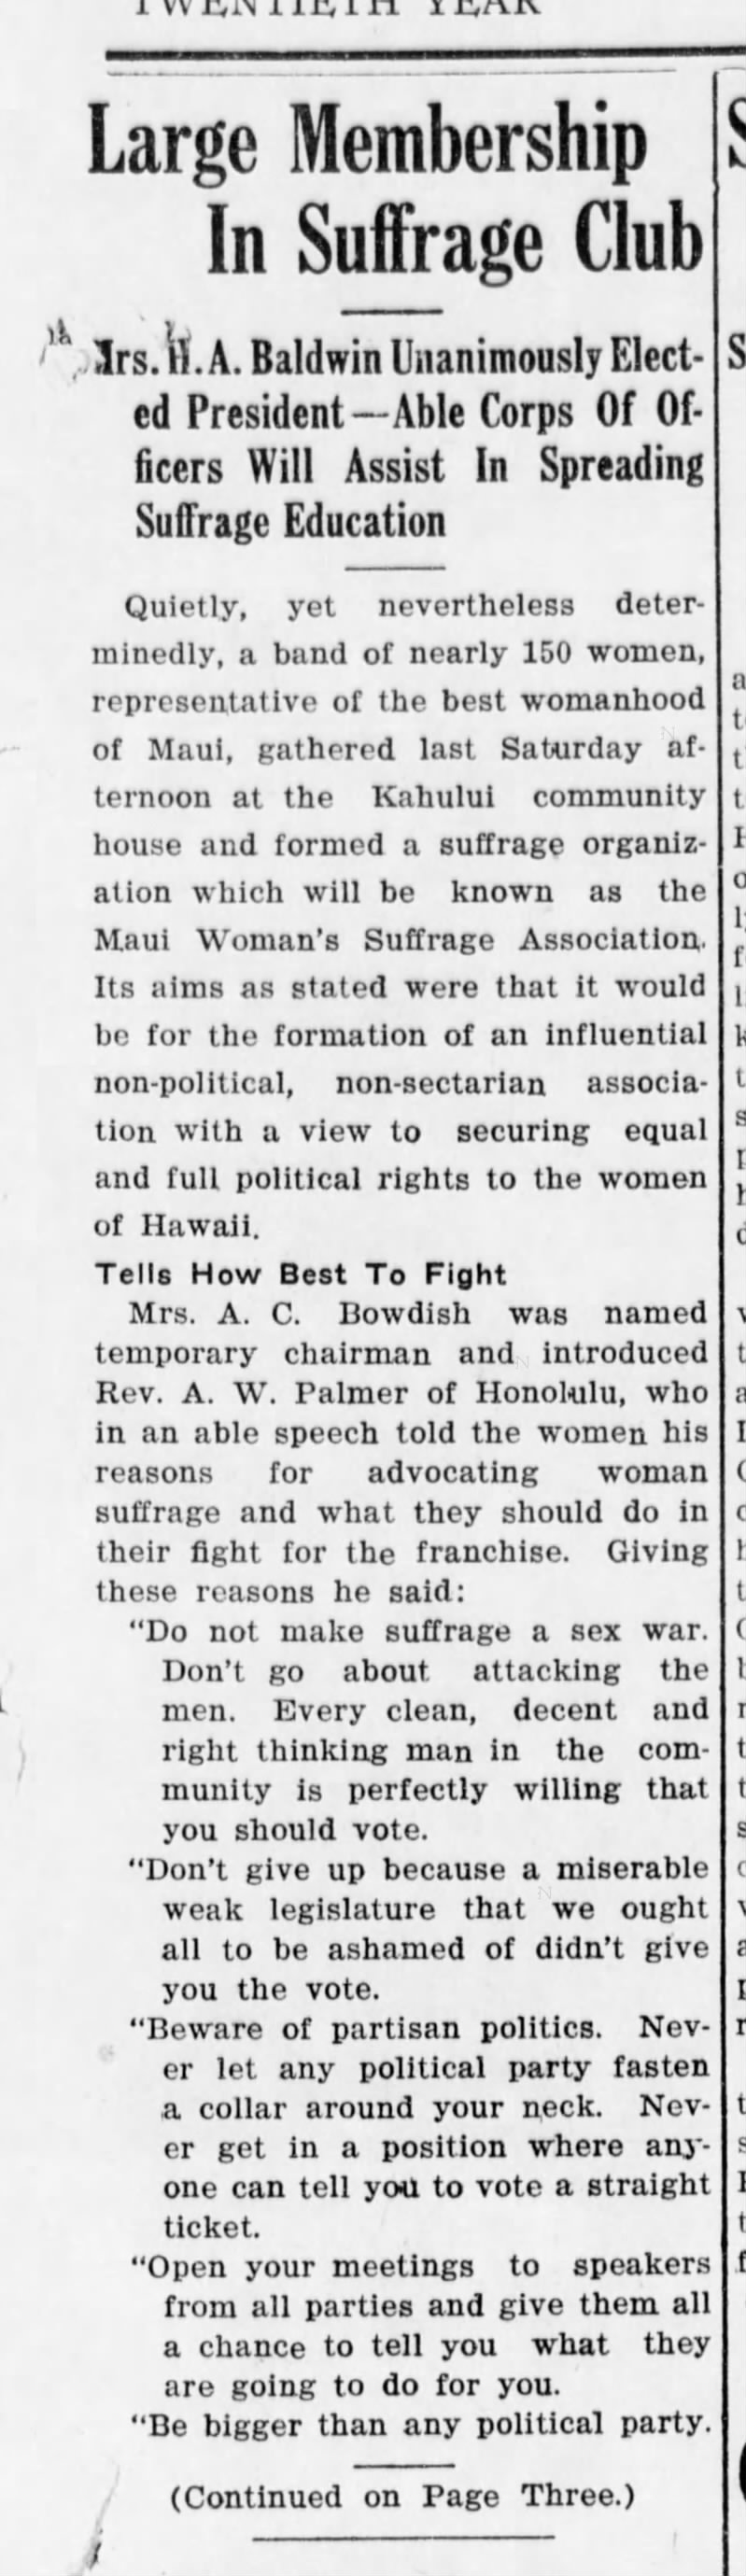 Mrs. HA  Baldwin Maui News Jun 6 1919 (1)